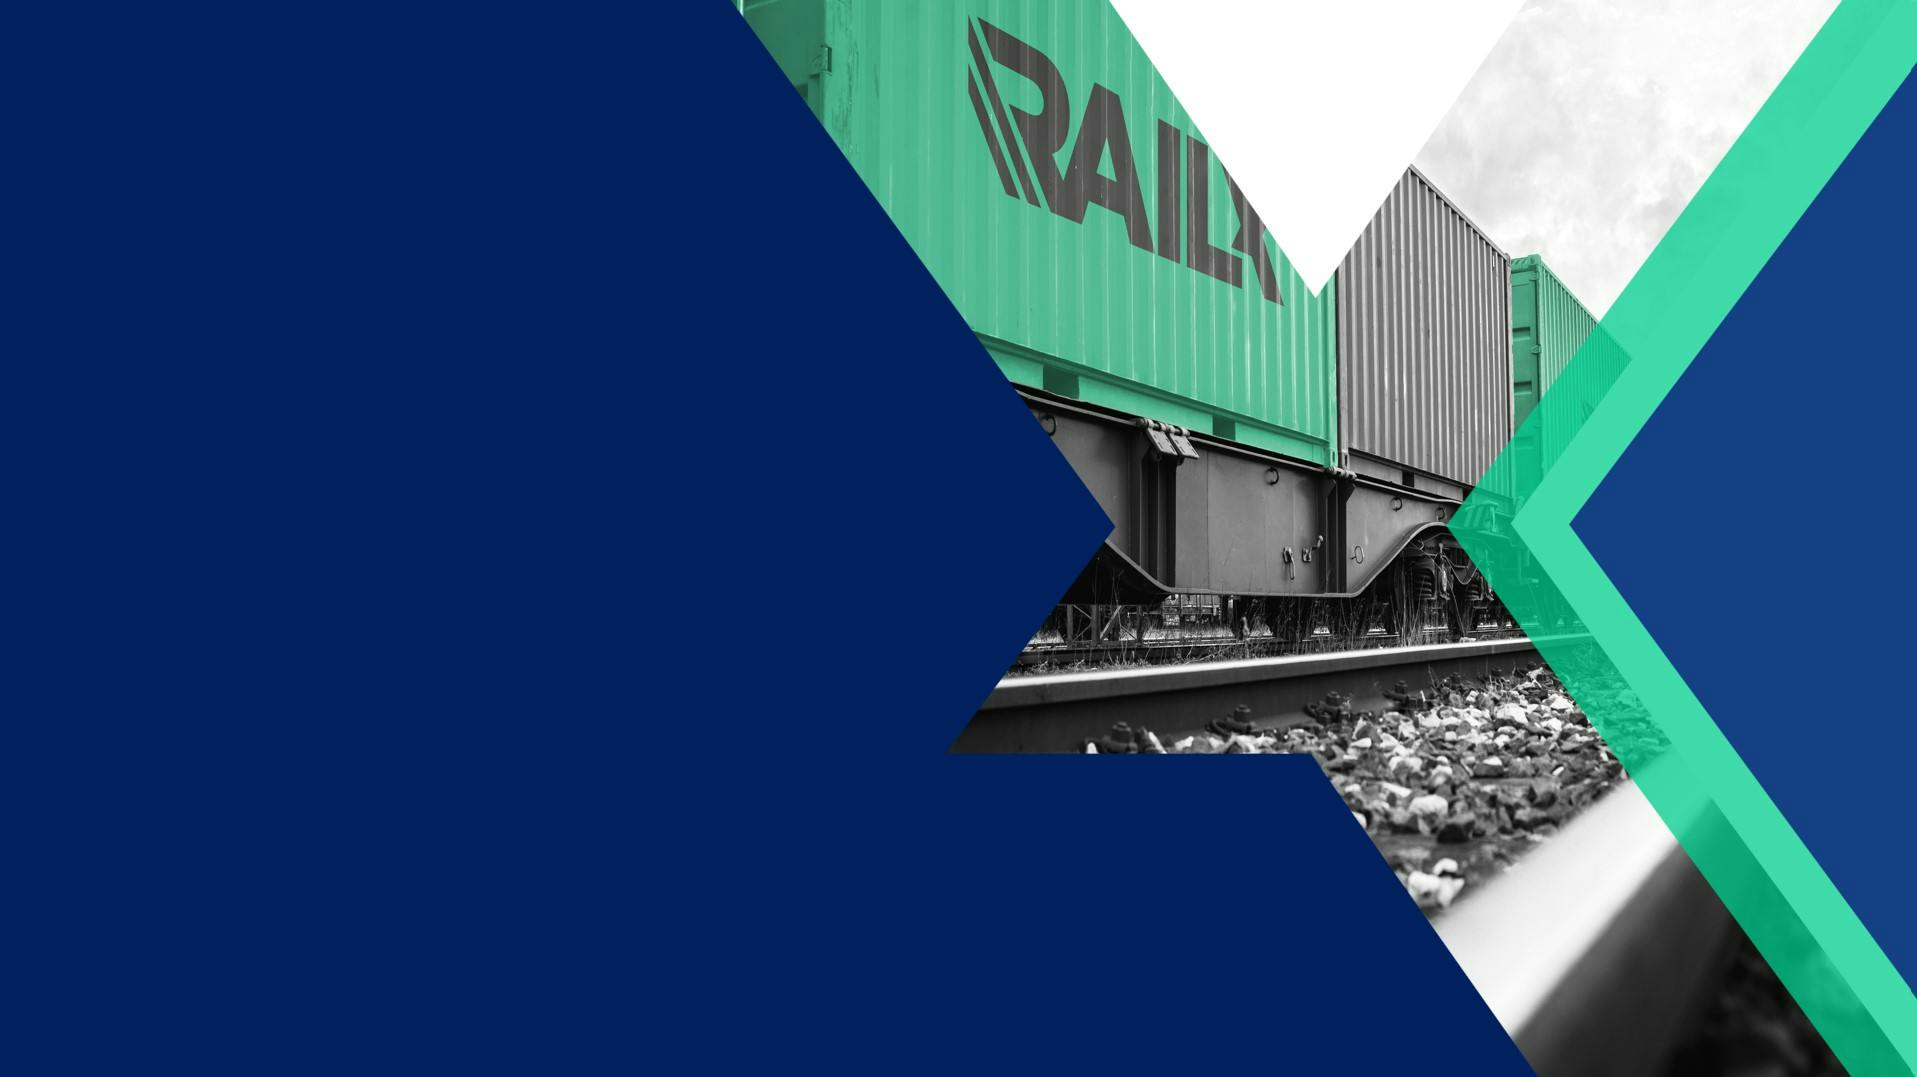 RailX cargo shown in a graphic design